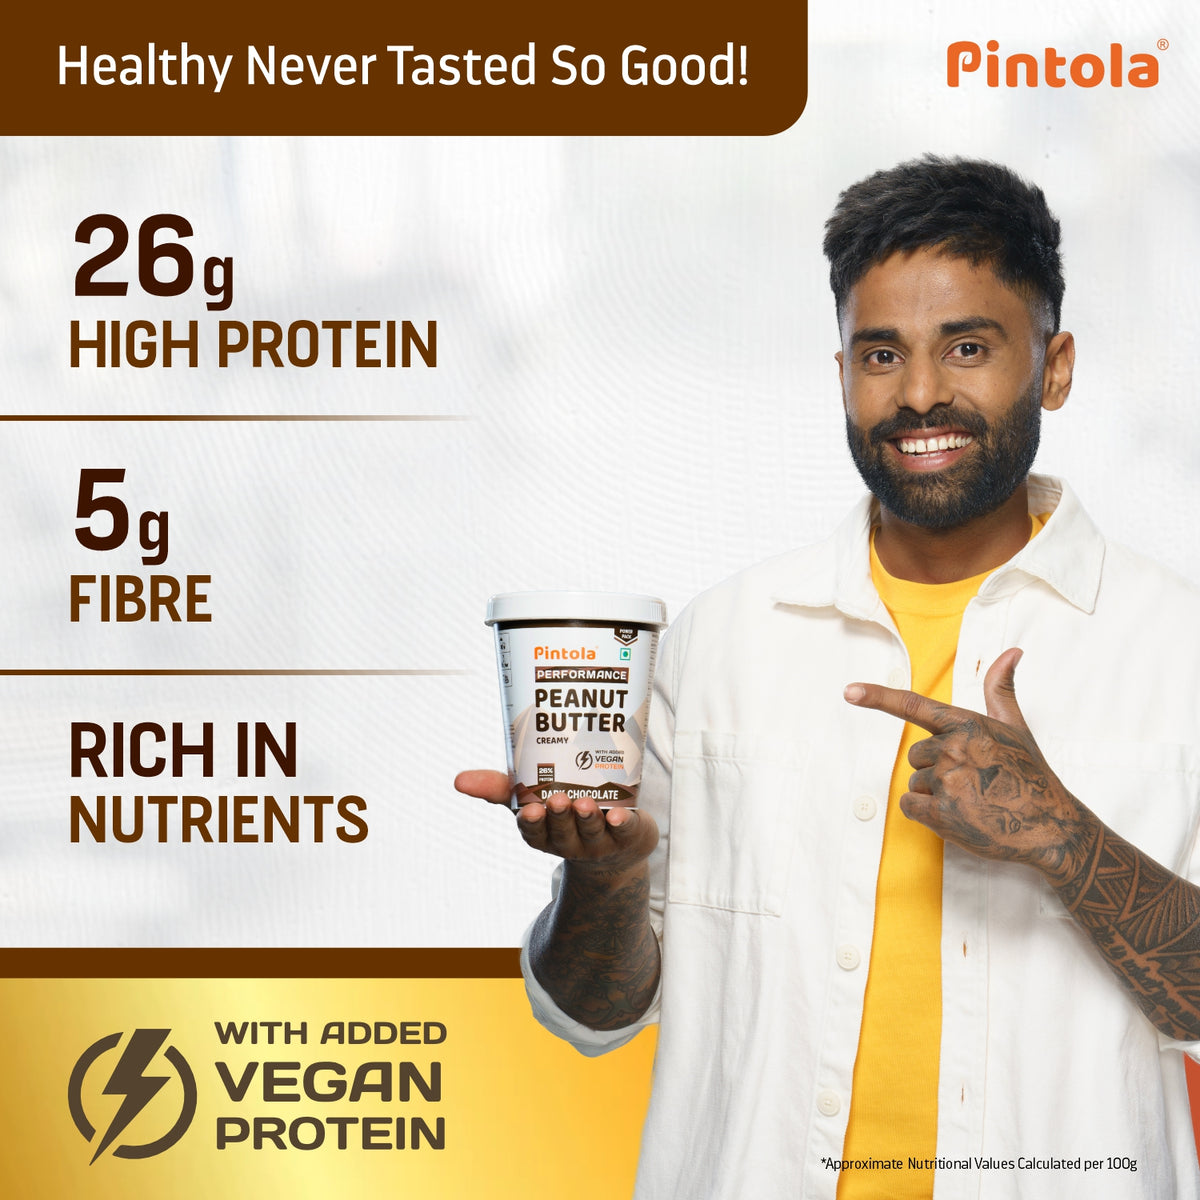 Dark Chocolate Performance Series Peanut Butter | Vegan Protein | 26% Protein | High Protein &amp; Fiber